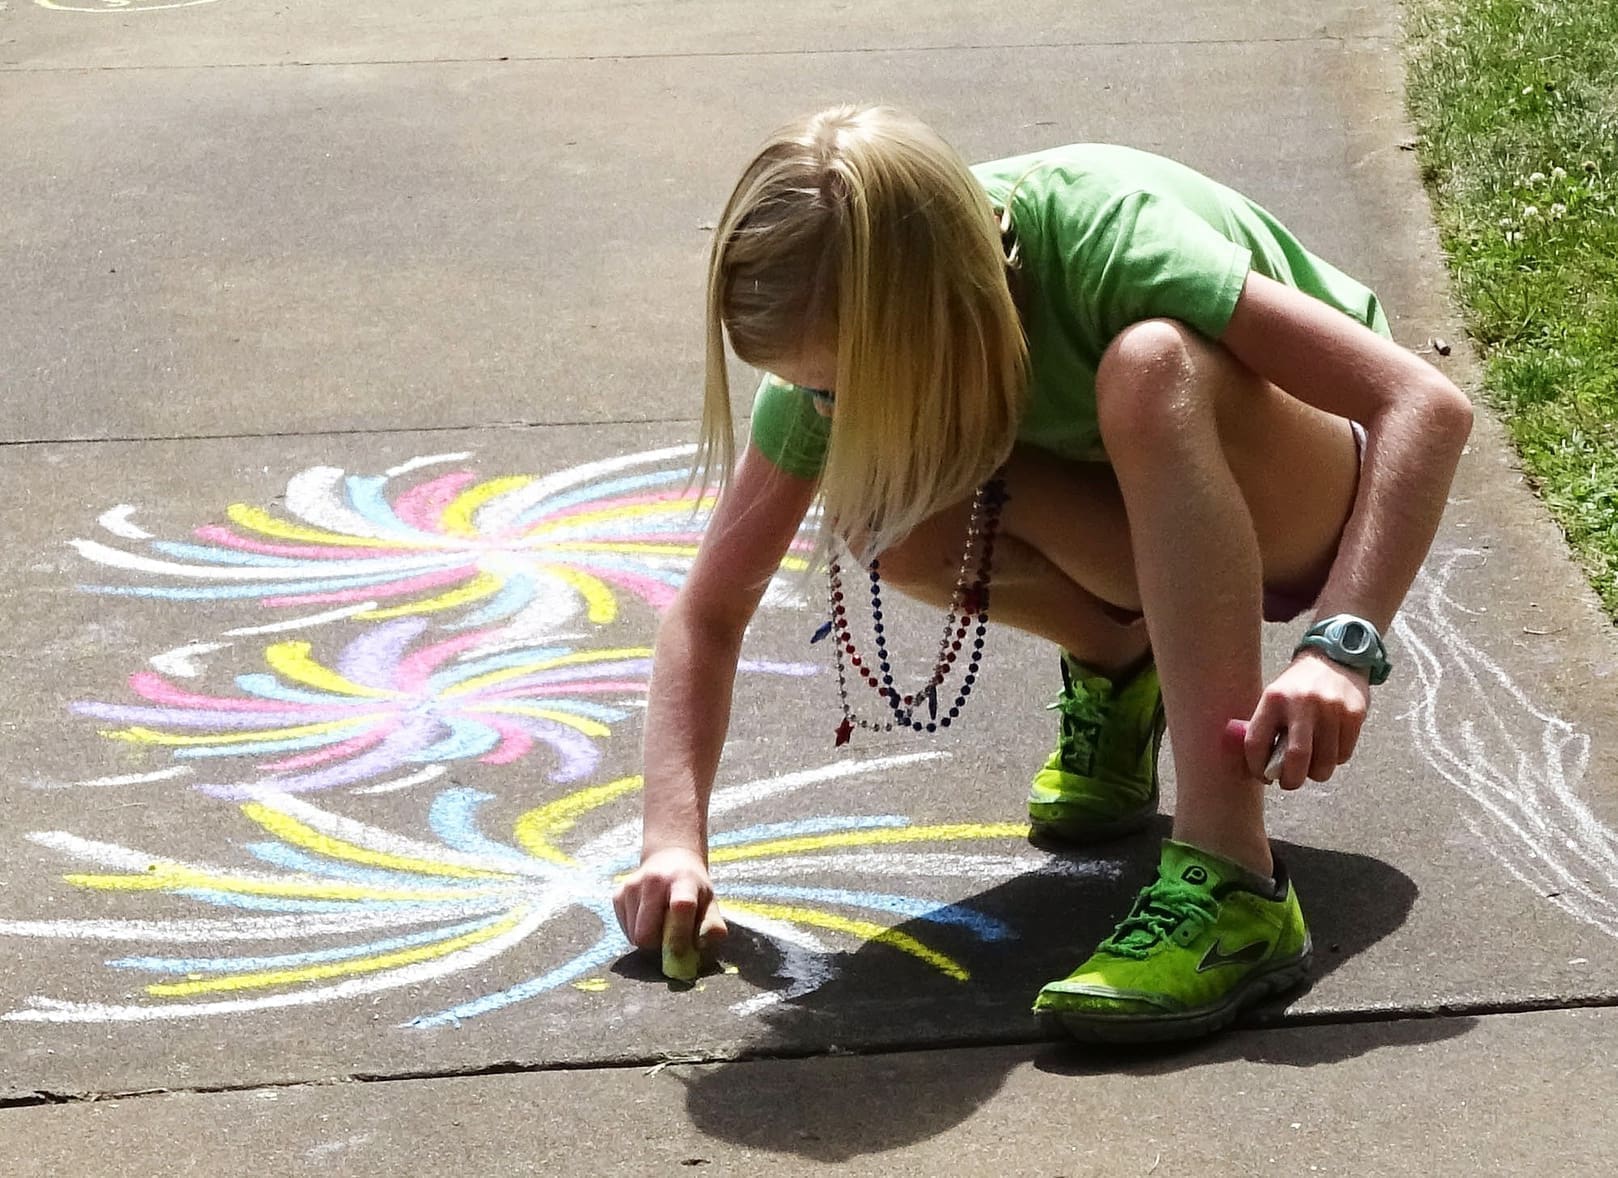 Beim roTeg Familientag konnten die Kinder unter anderem mit Straßenkreide malen